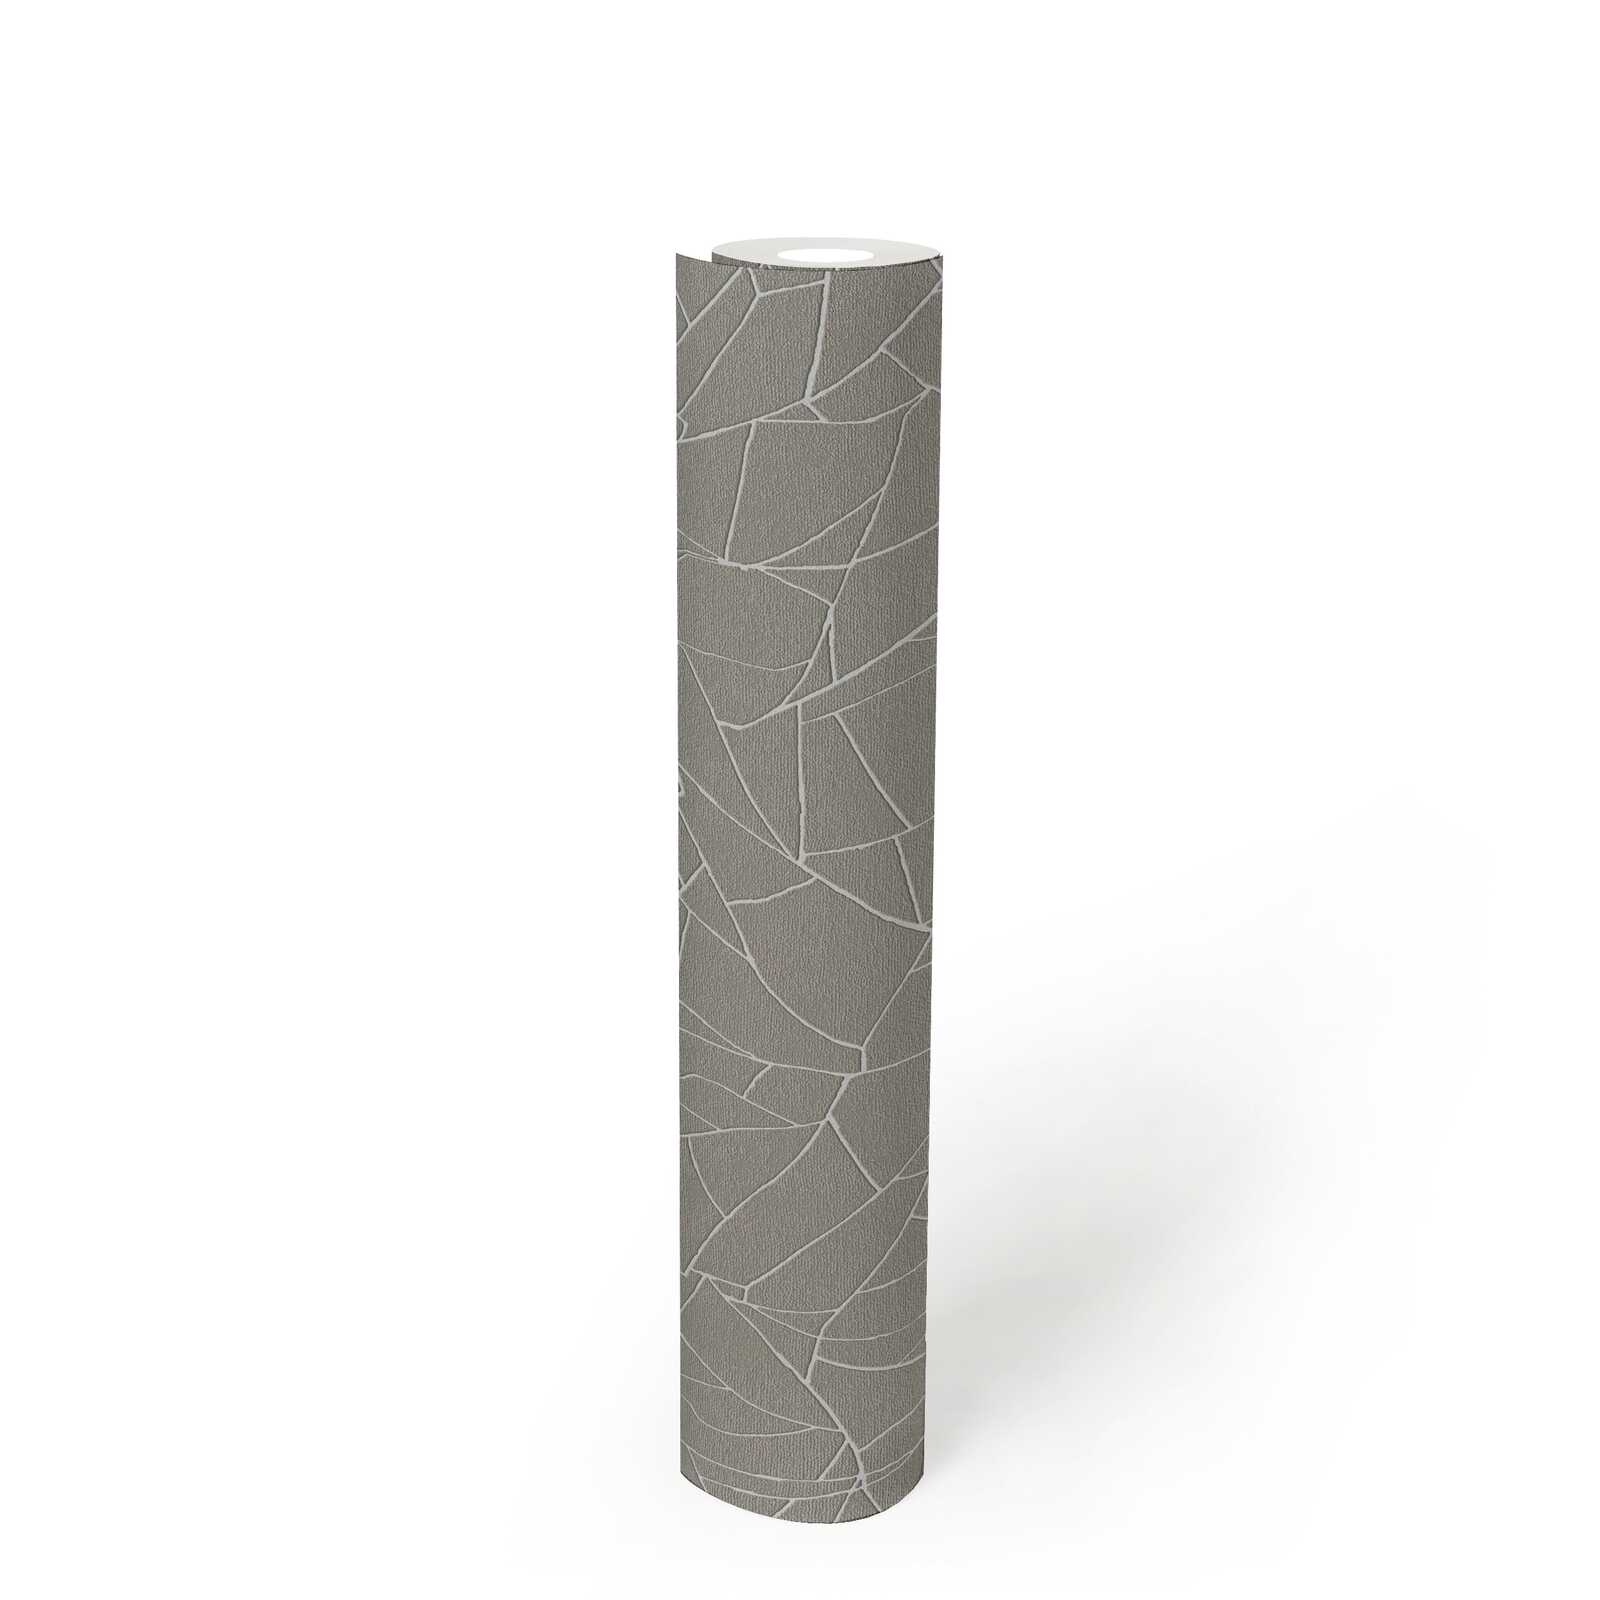             Papel pintado tejido-no tejido 3D con motivos naturales - gris, blanco
        